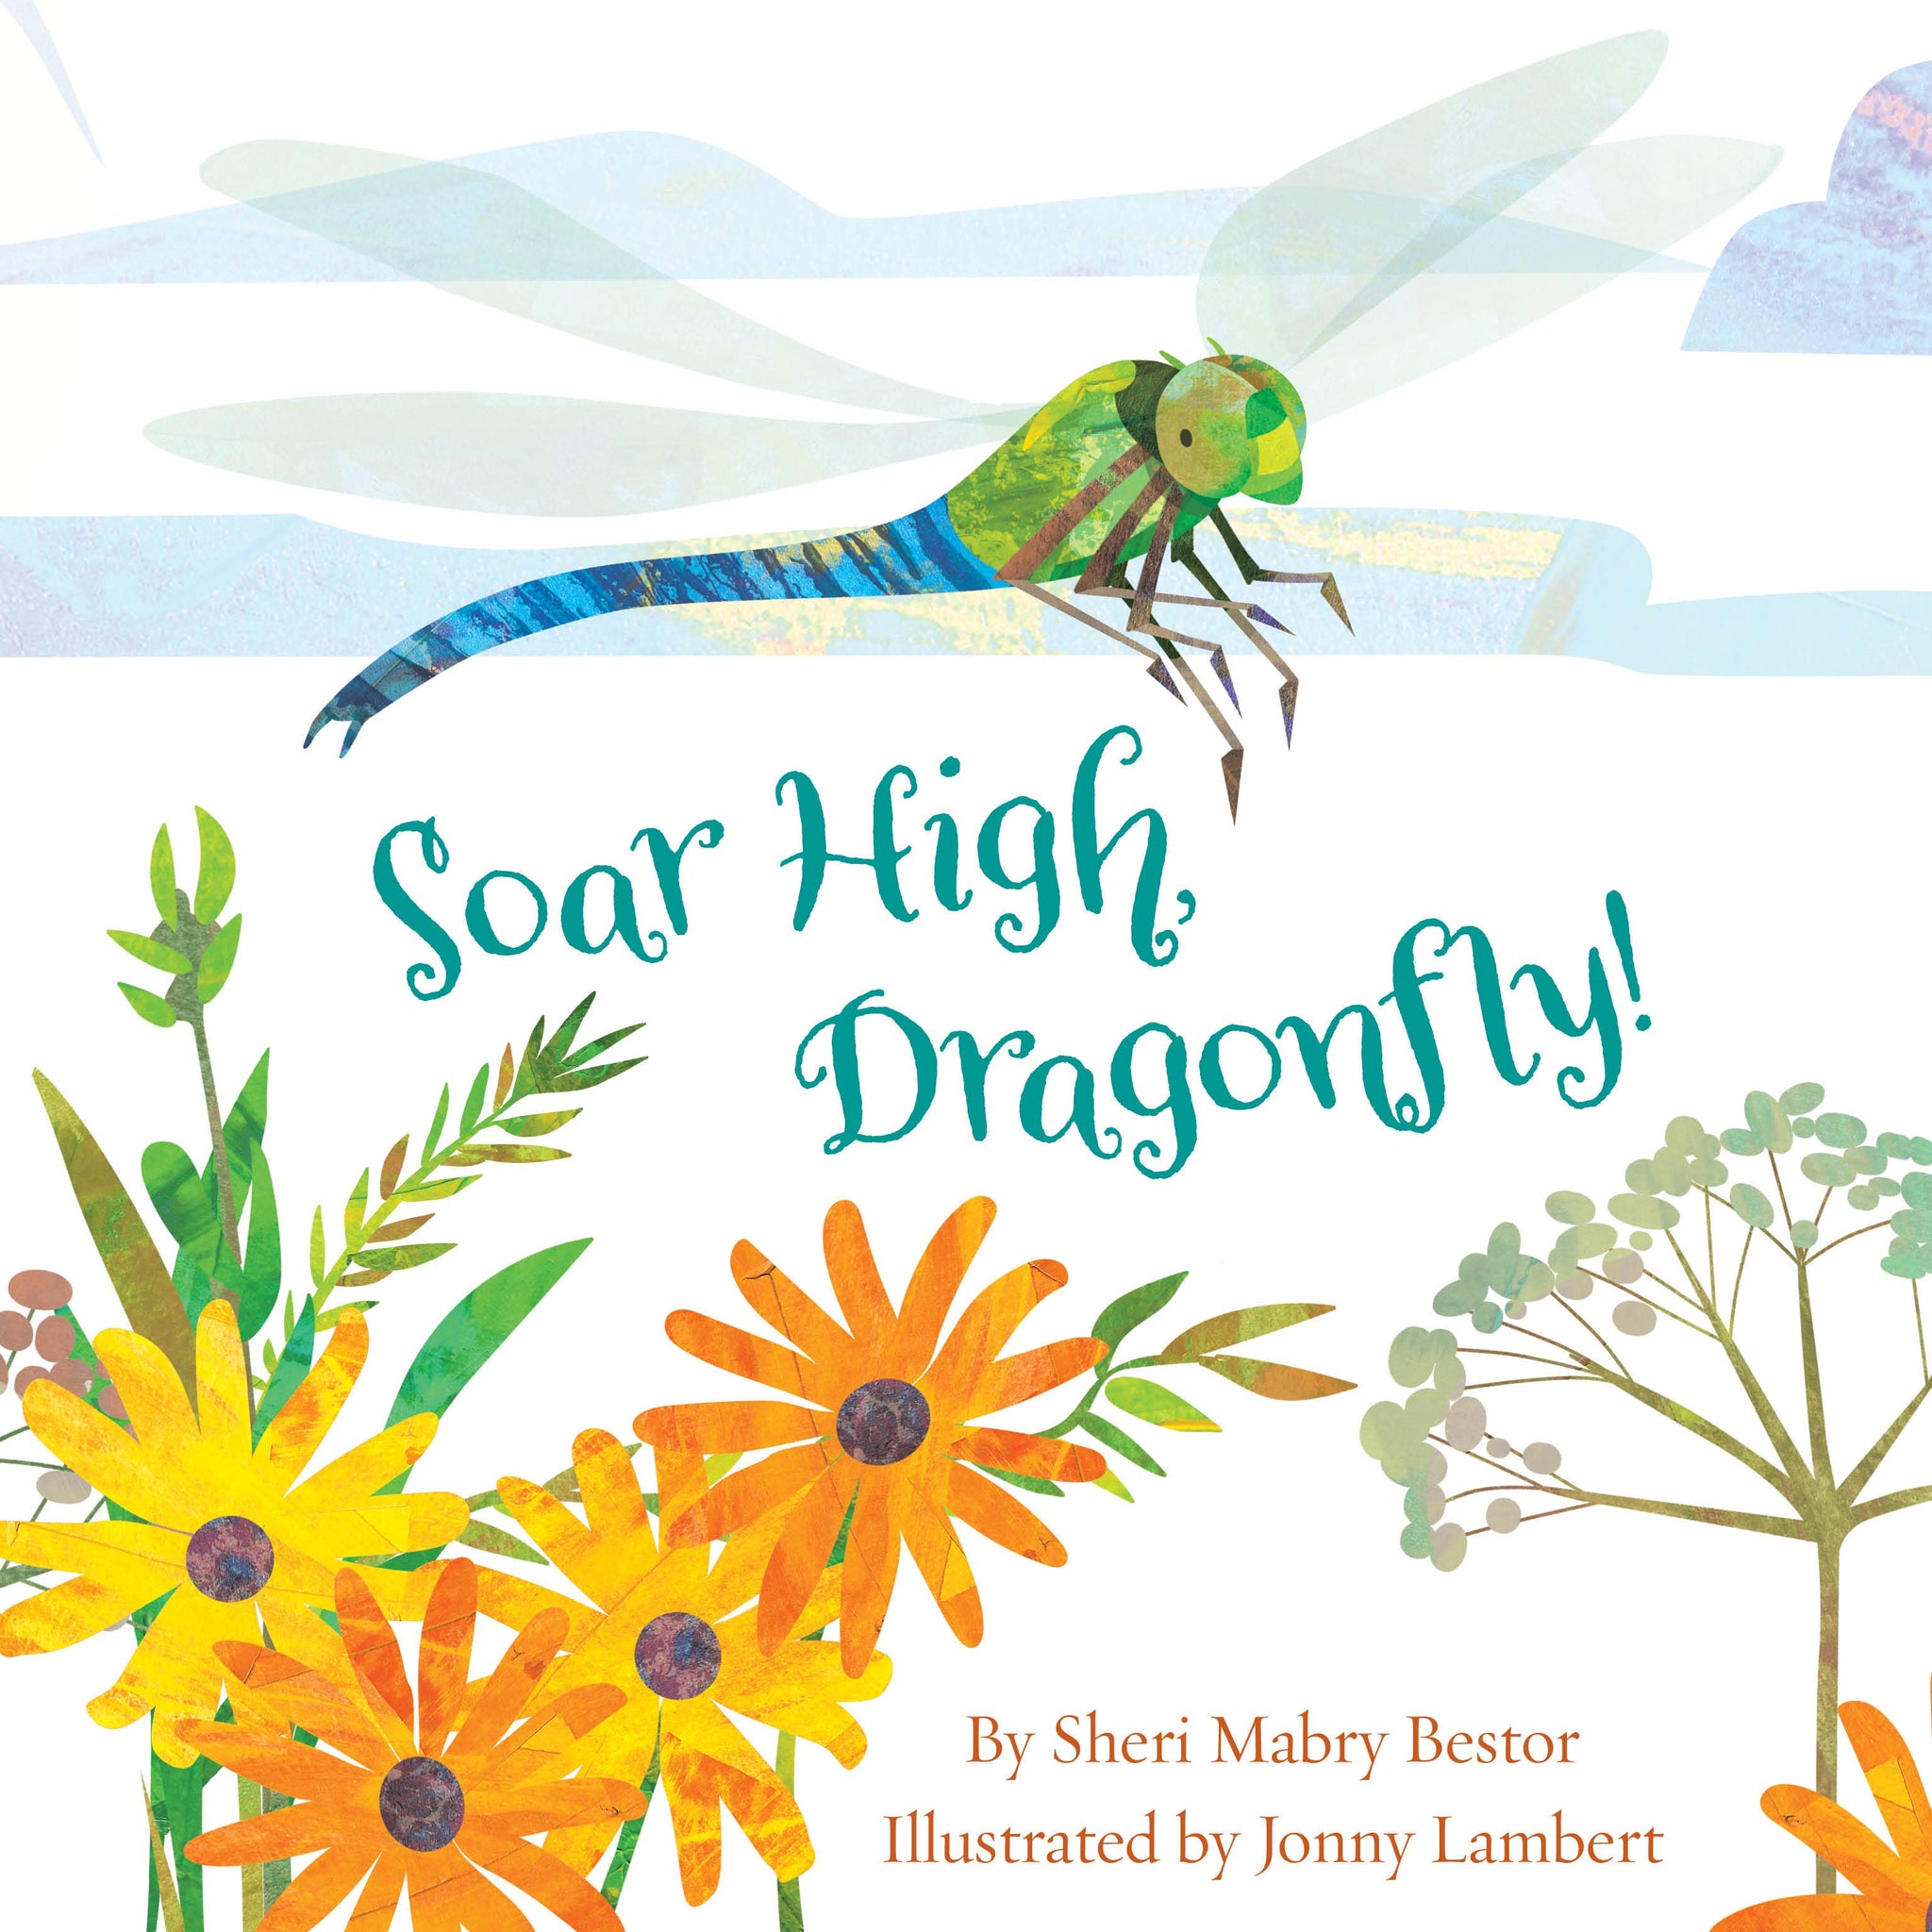 Soar High, Dragonfly!